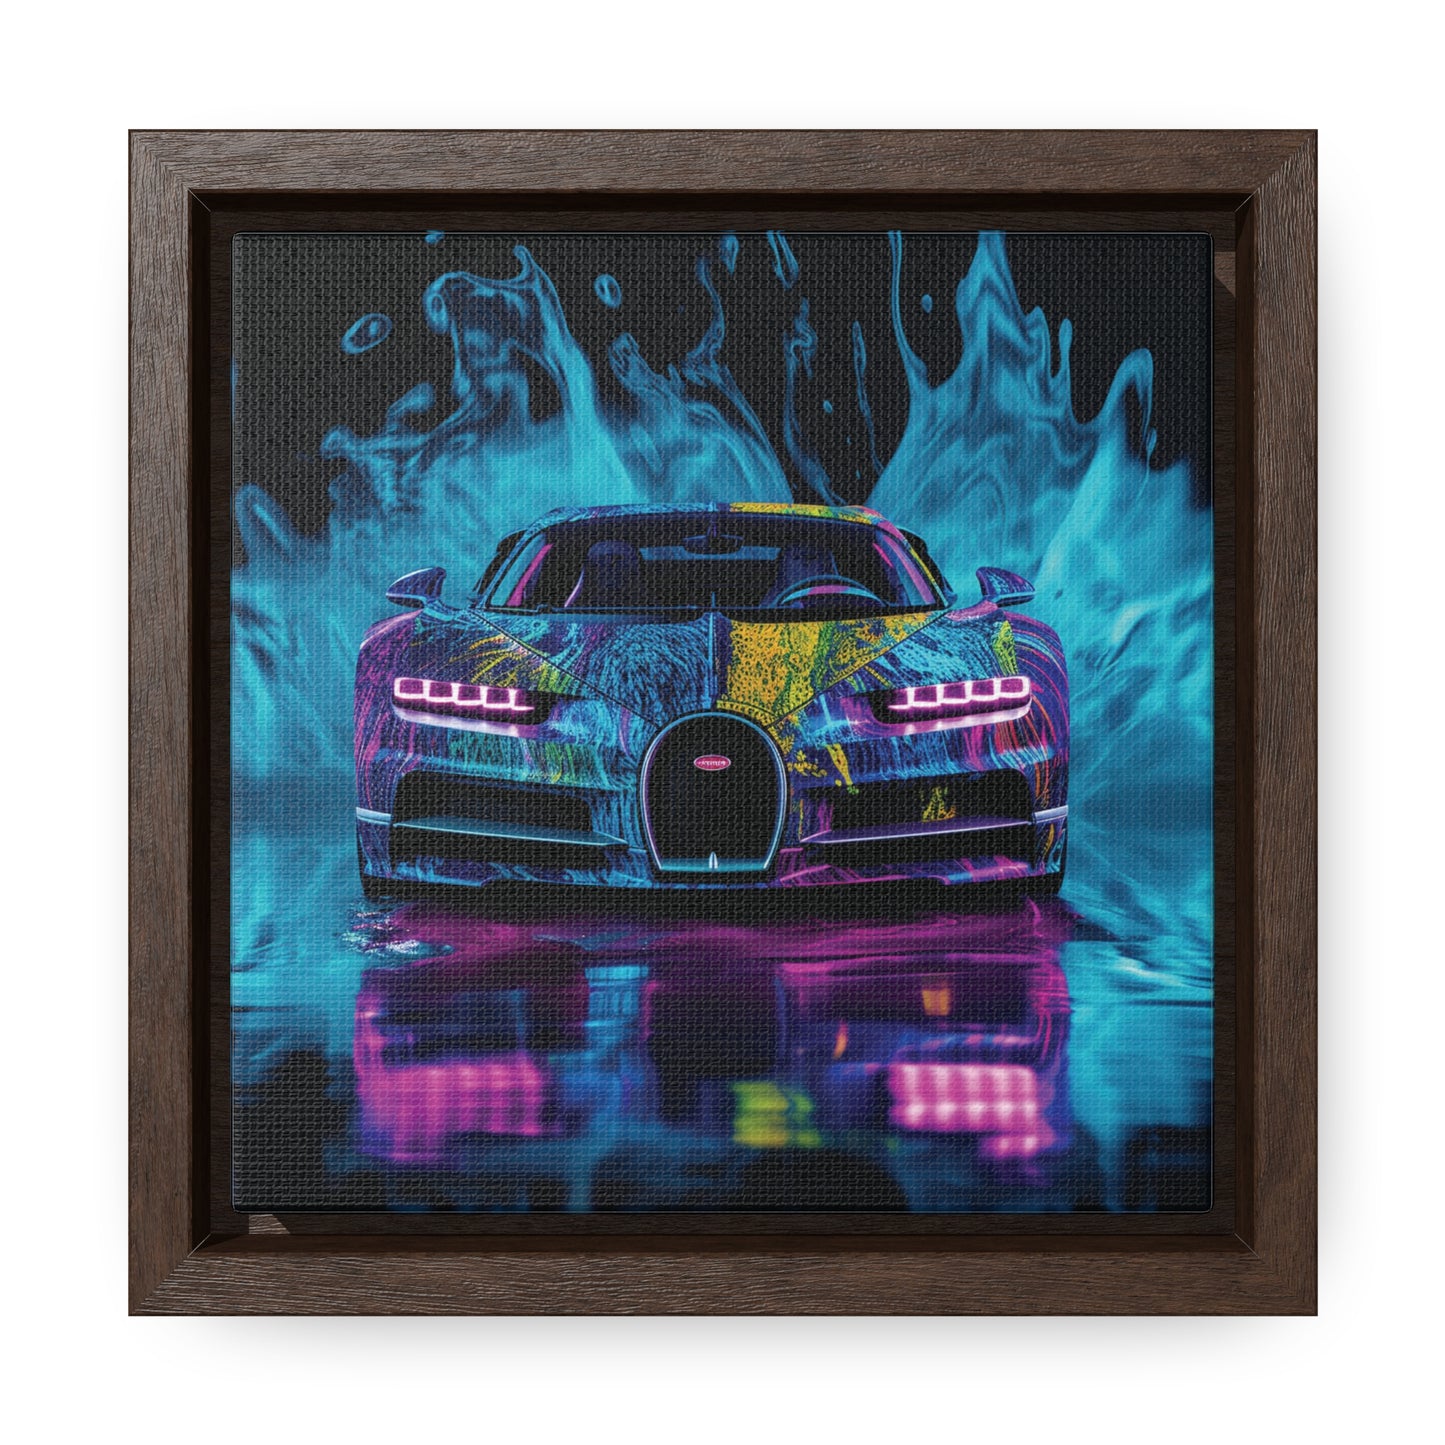 Gallery Canvas Wraps, Square Frame Bugatti Water 2